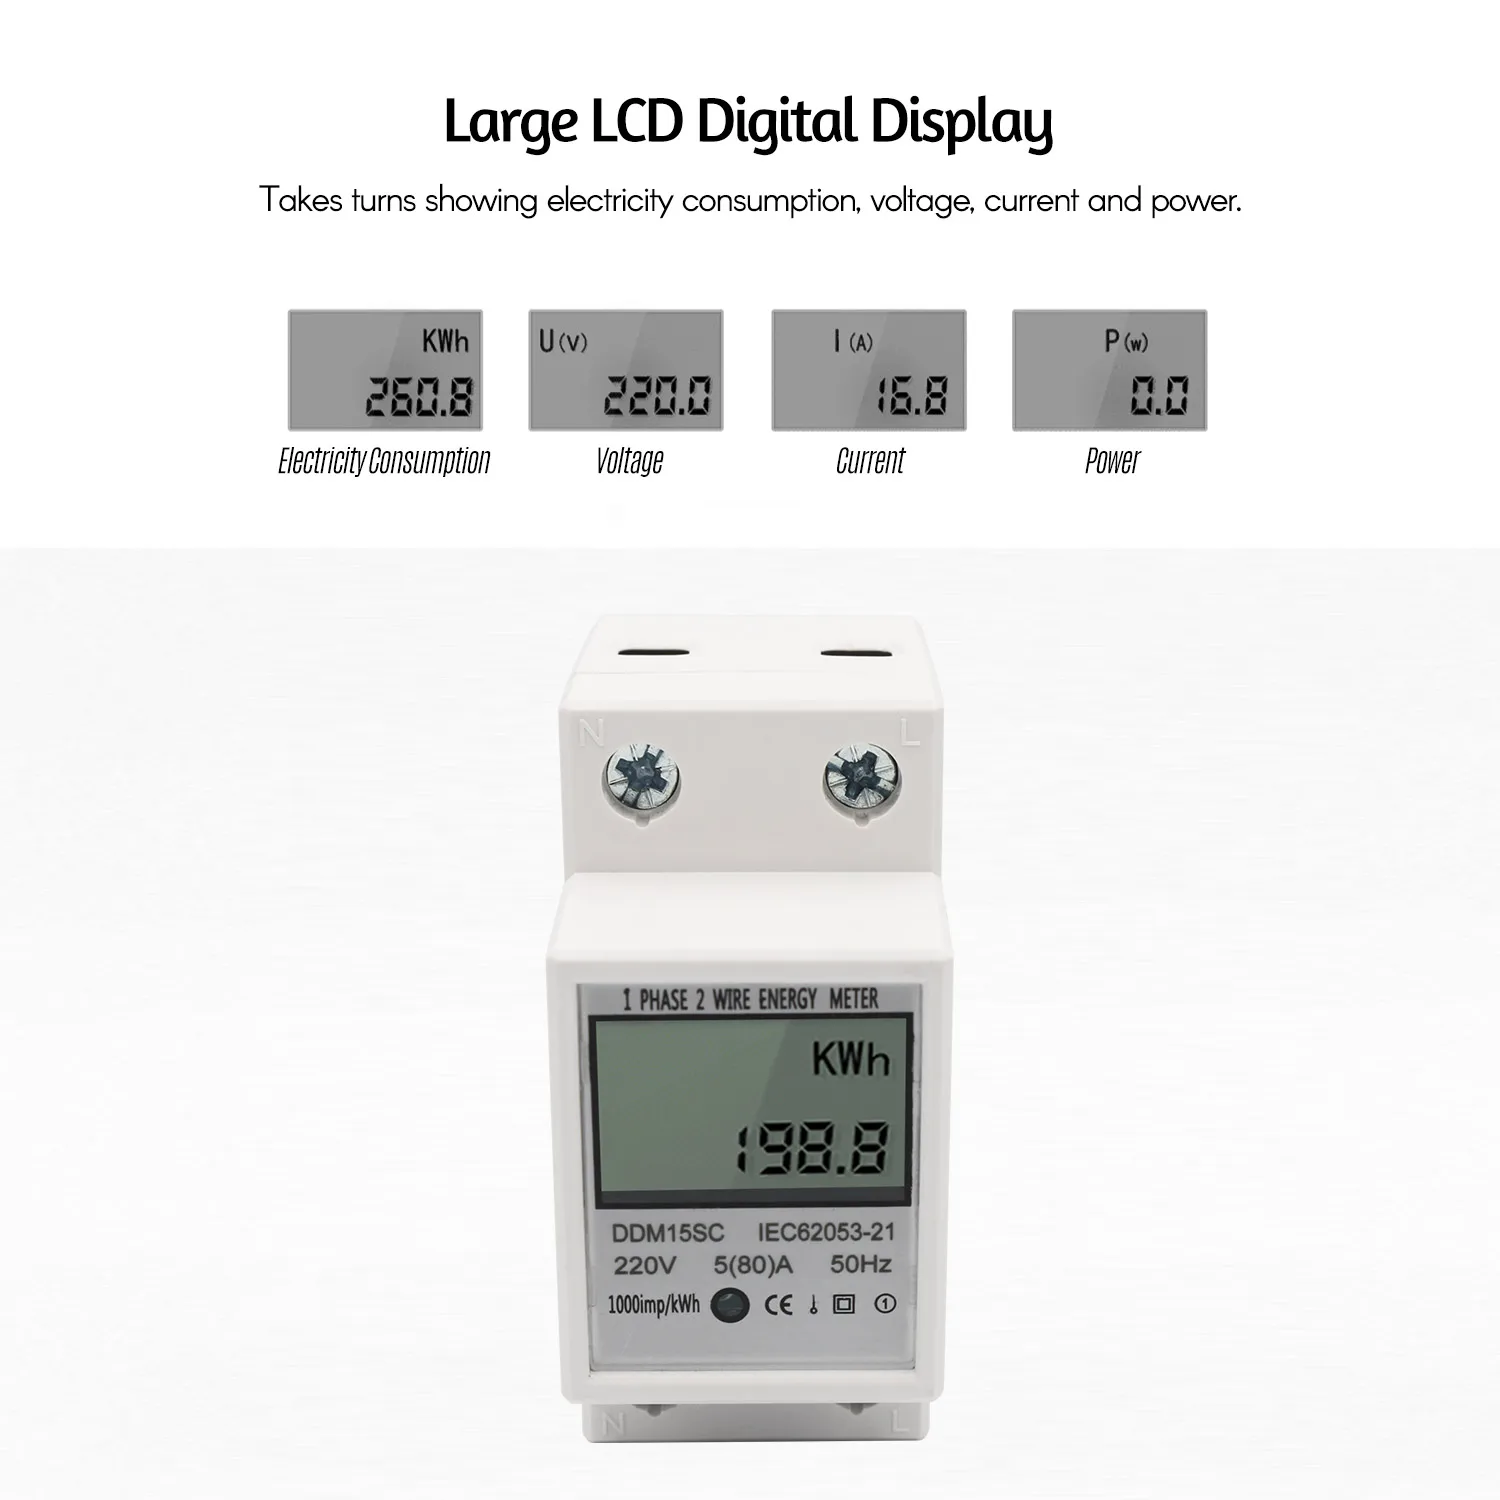 DDM15SC ЖК-цифровой дисплей однофазный din-рейку счетчик энергии 5-80A 220 В 50 Гц электронный счетчик, кВтч-монитор энергопотребления